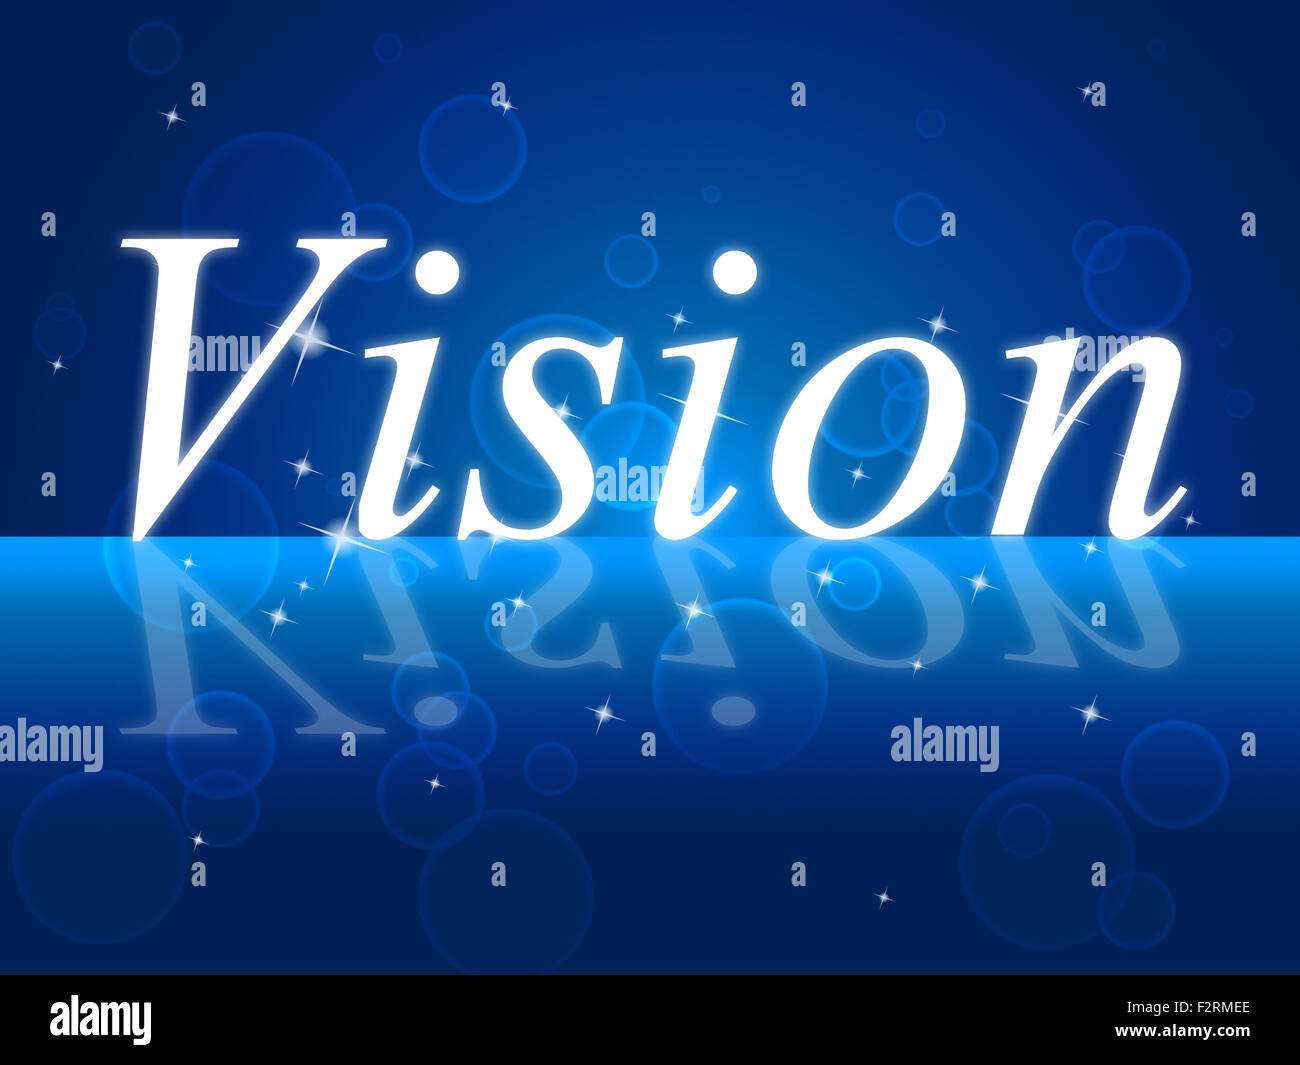 Vision objectifs indiquant les objectifs futurs et les aspirations Banque D'Images